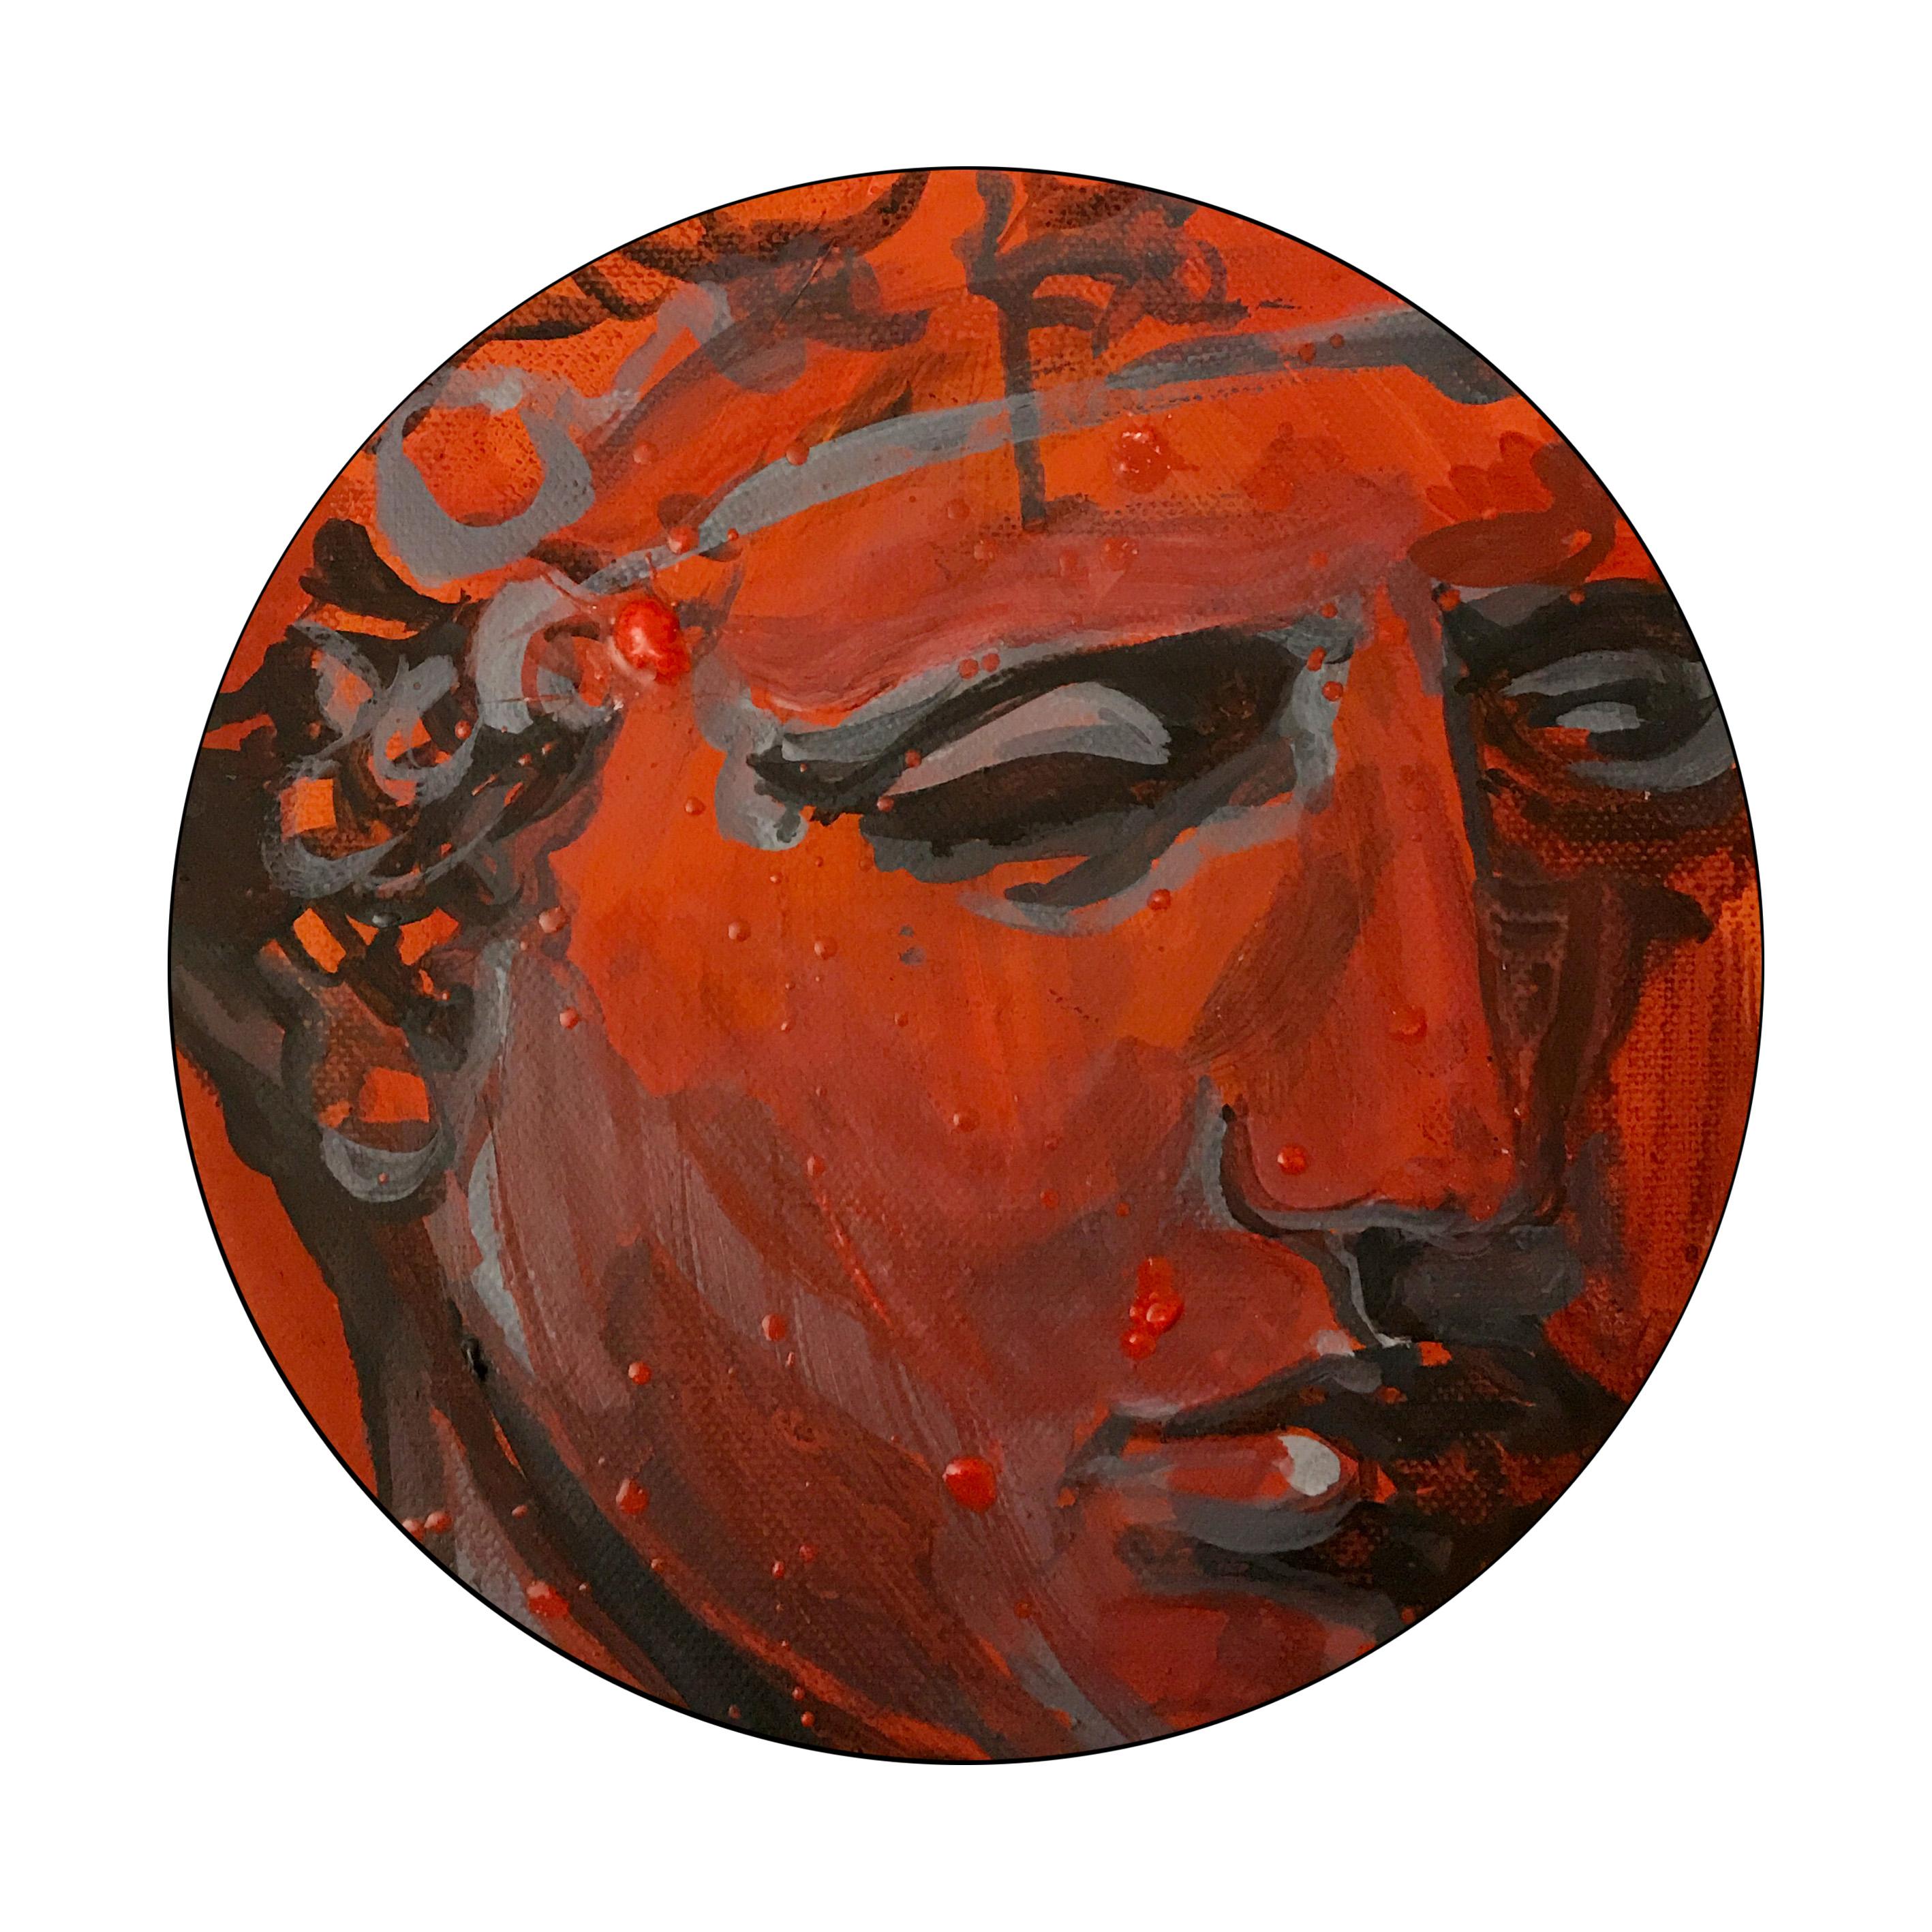 Le guerrier - pièce unique sur toile ronde de Paula Craioveanu - NeoMythology